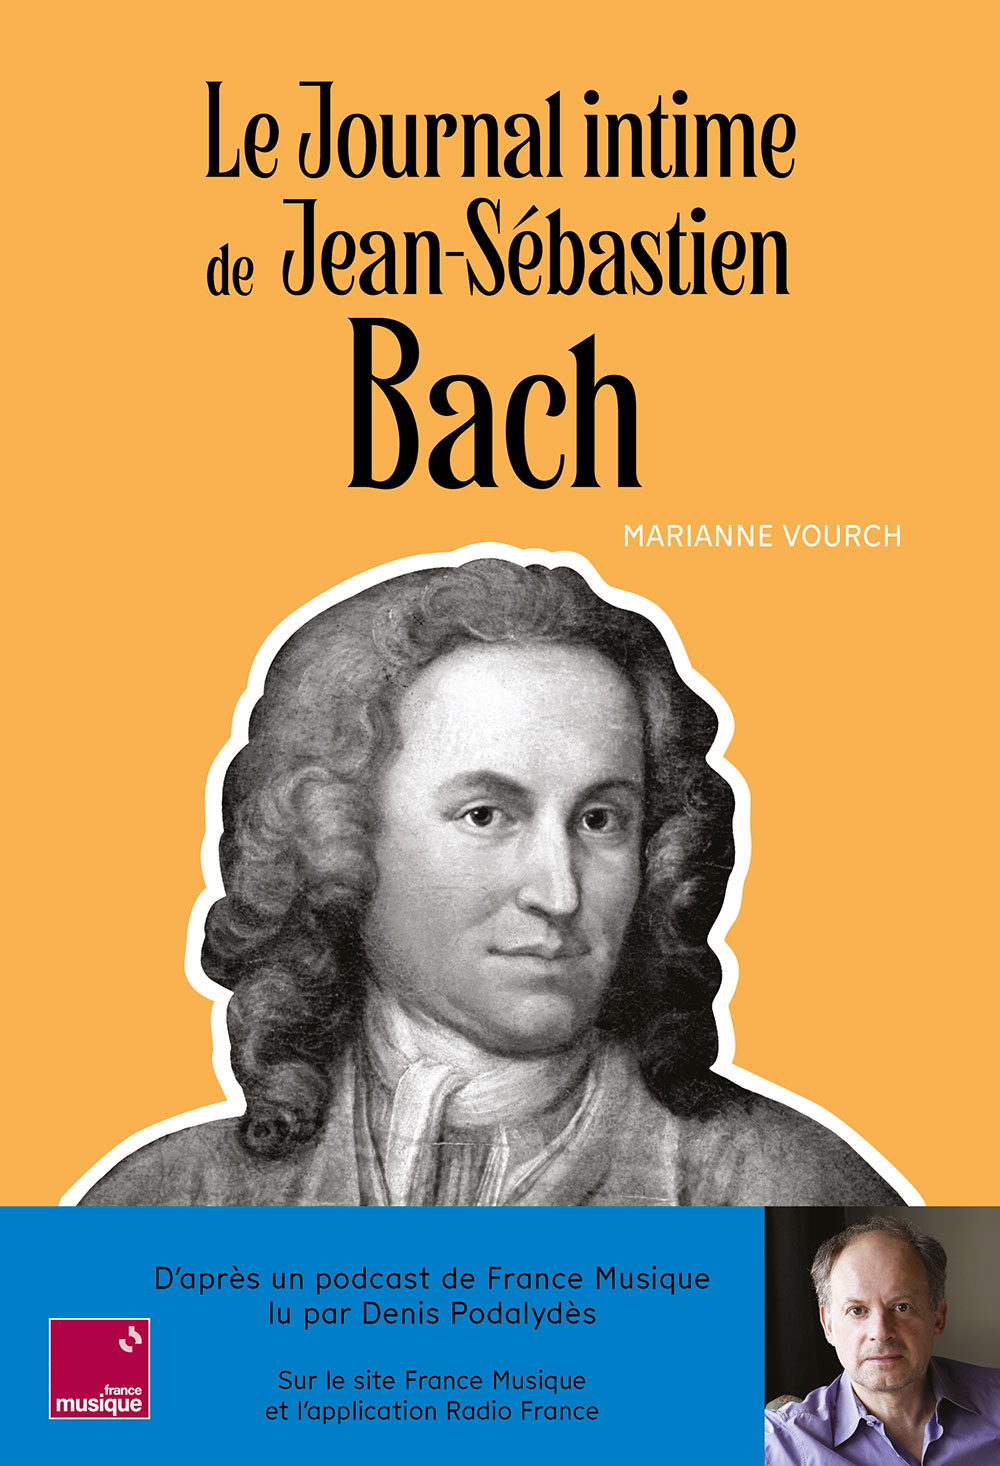 Le journal intime de Jean-Sébastien Bach